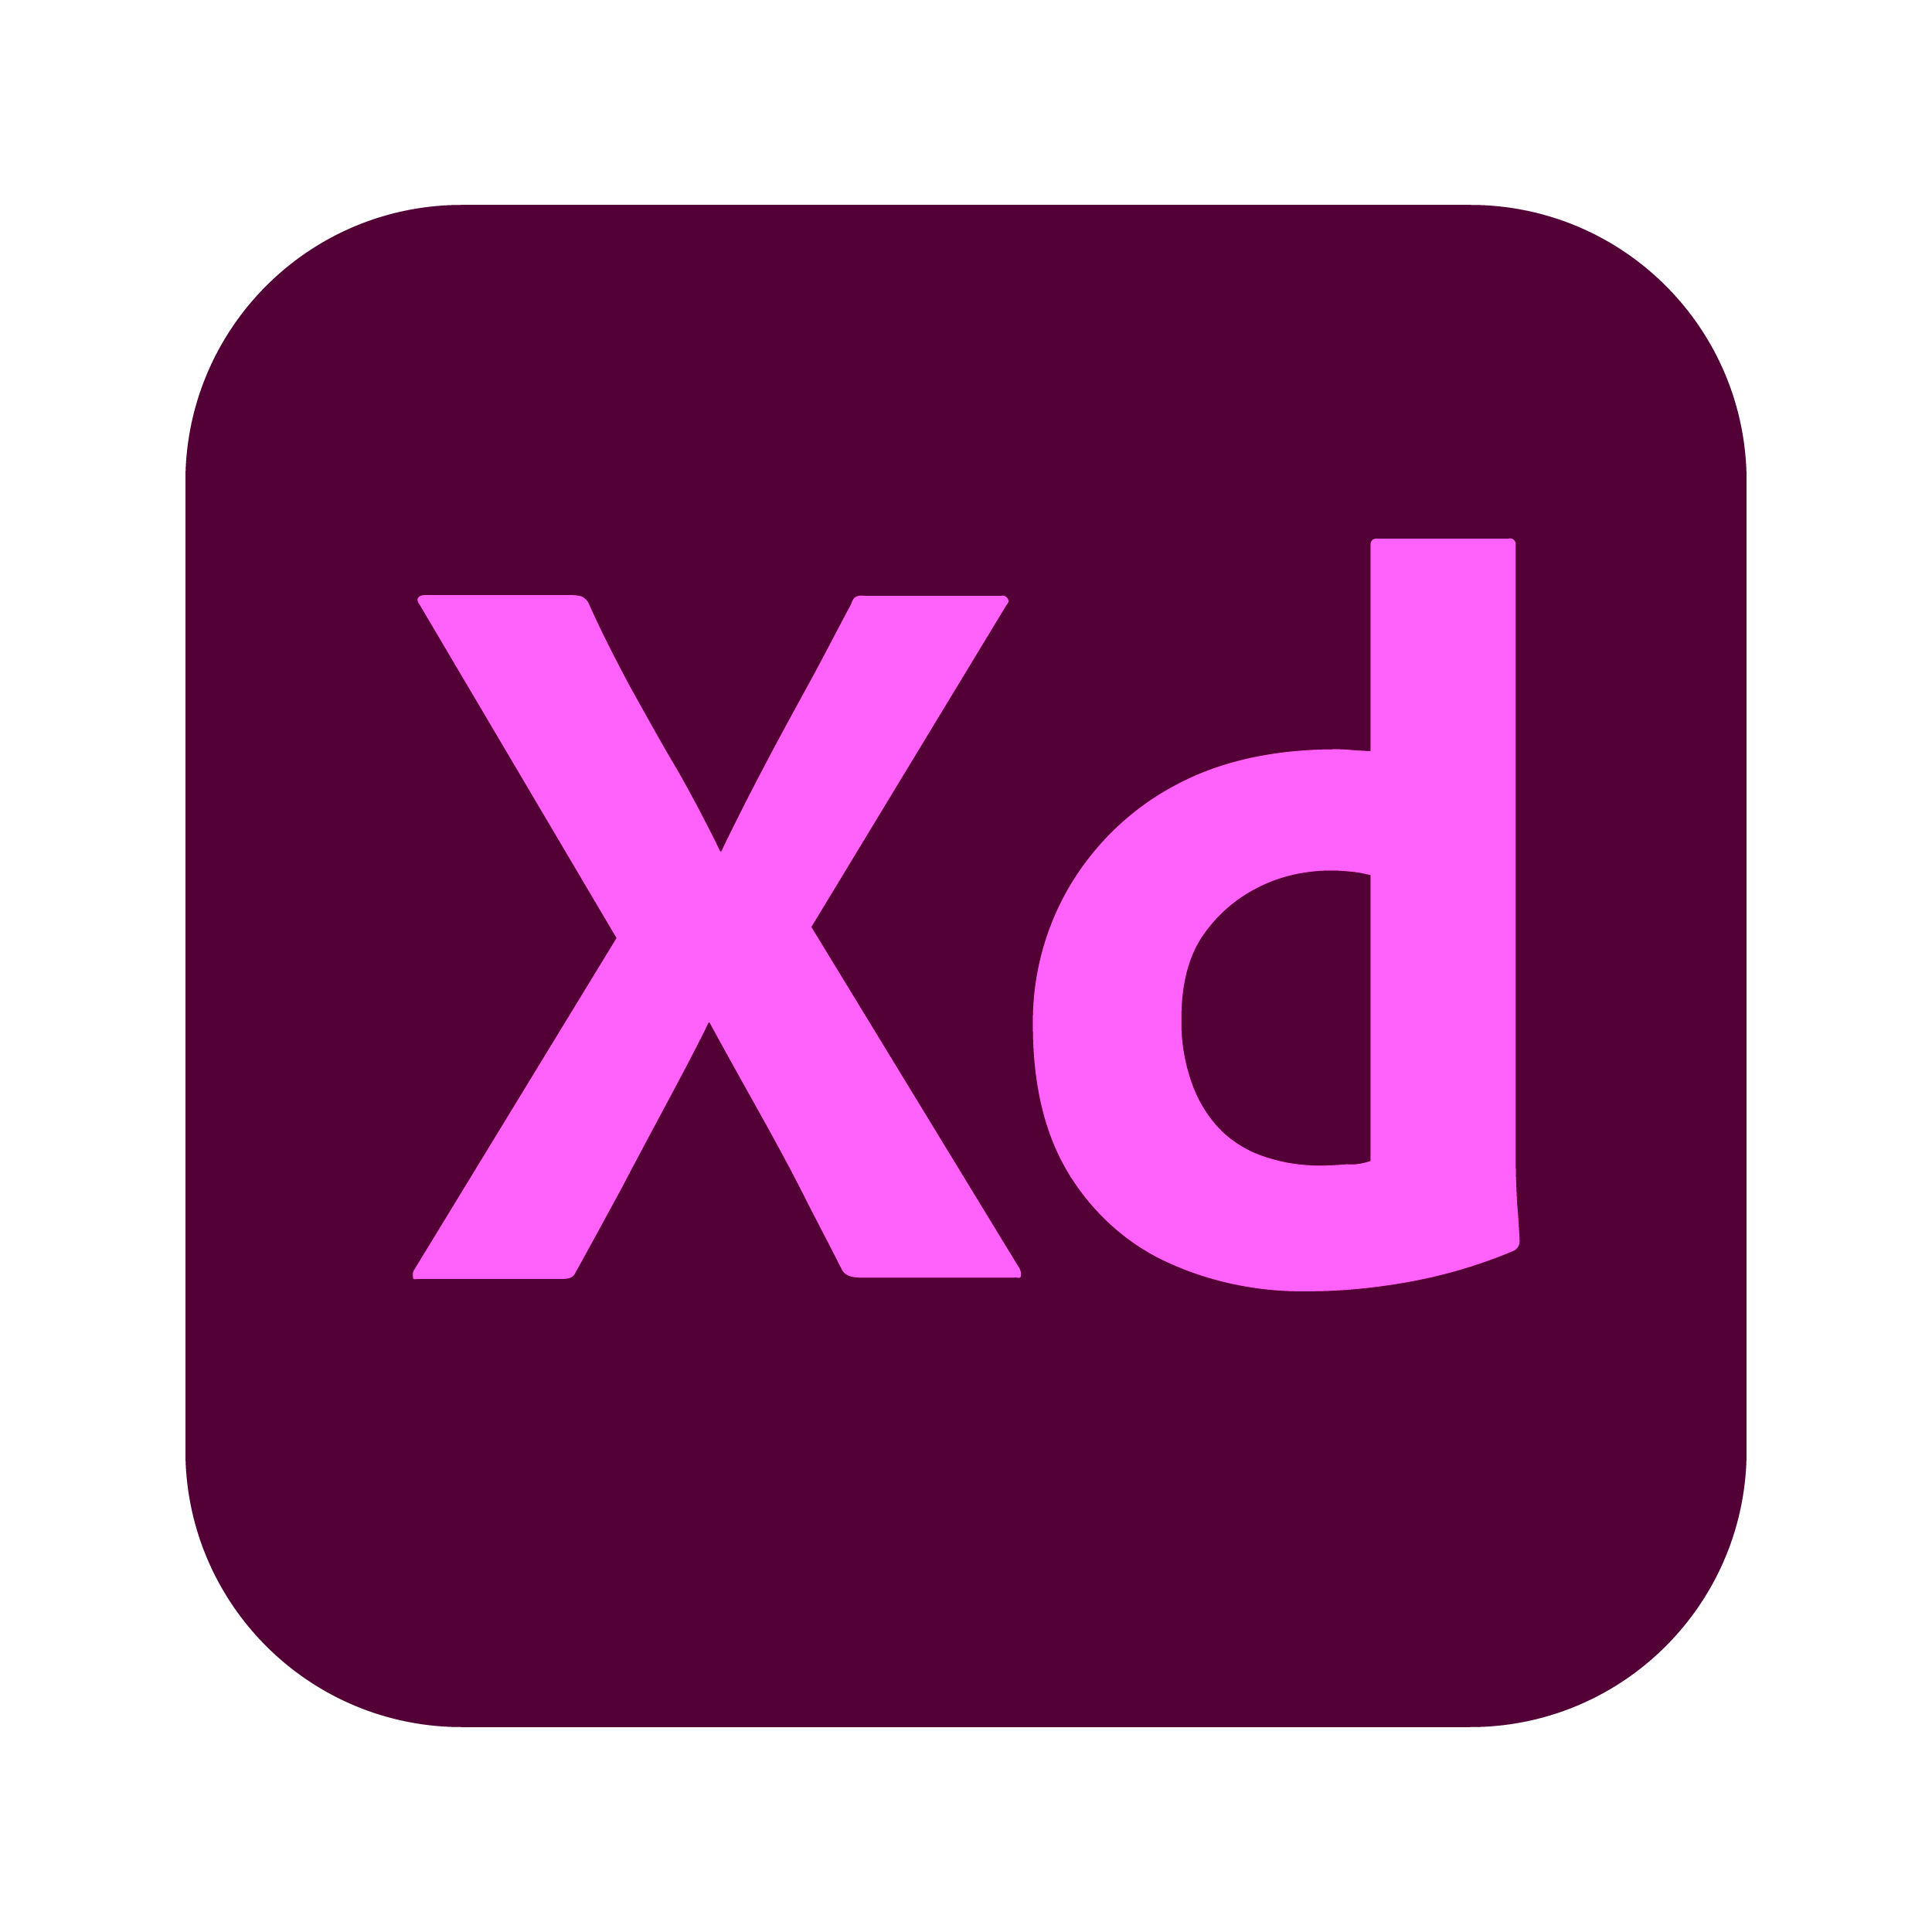 Adobe XD CC.png